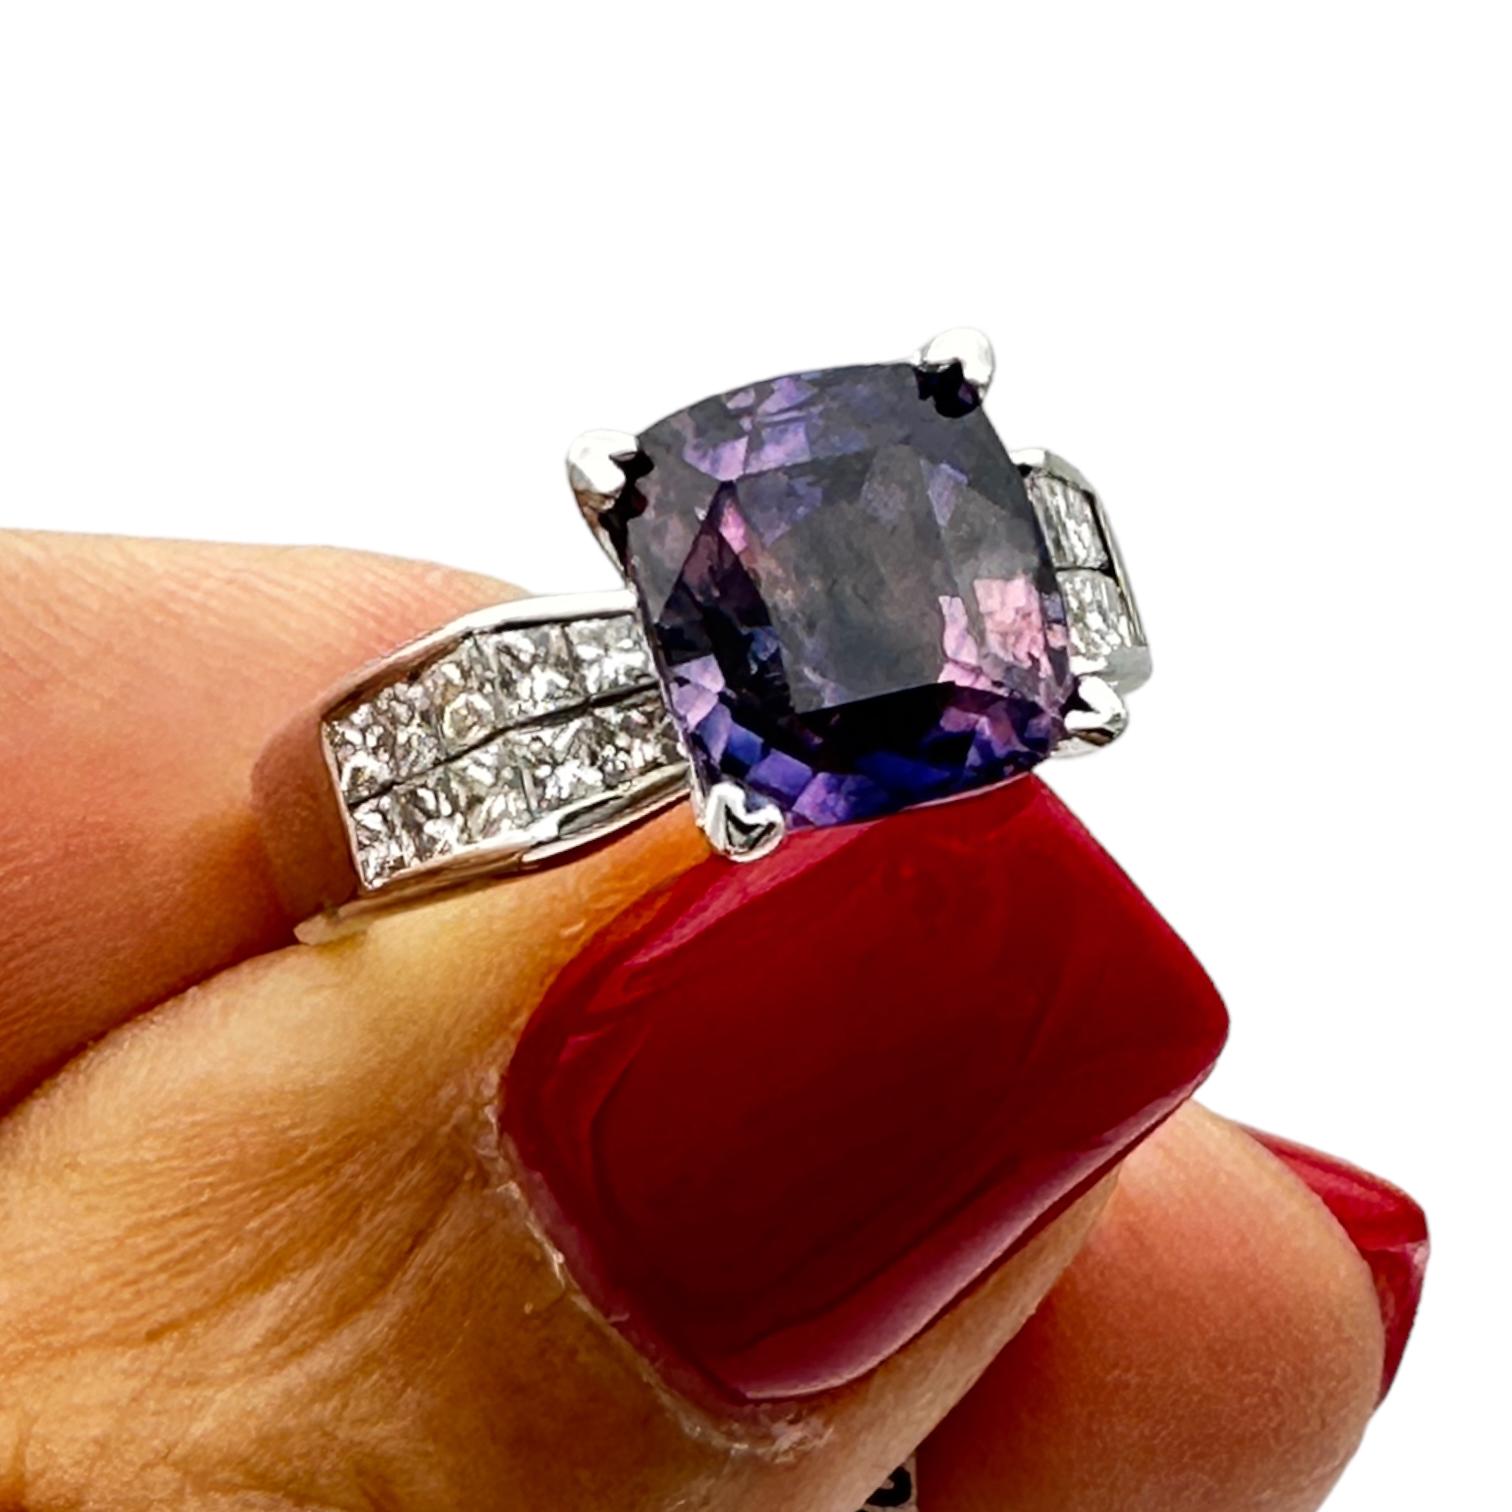 La bague en or blanc 18 carats met en valeur un rare saphir violet de taille coussin solitaire en diamant. Le saphir mesure 9,18-8,05 x 5,58 mm et pèse 3,98 carats. La couleur du saphir est pourpre avec une nuance bleue. Il est taillé en forme de